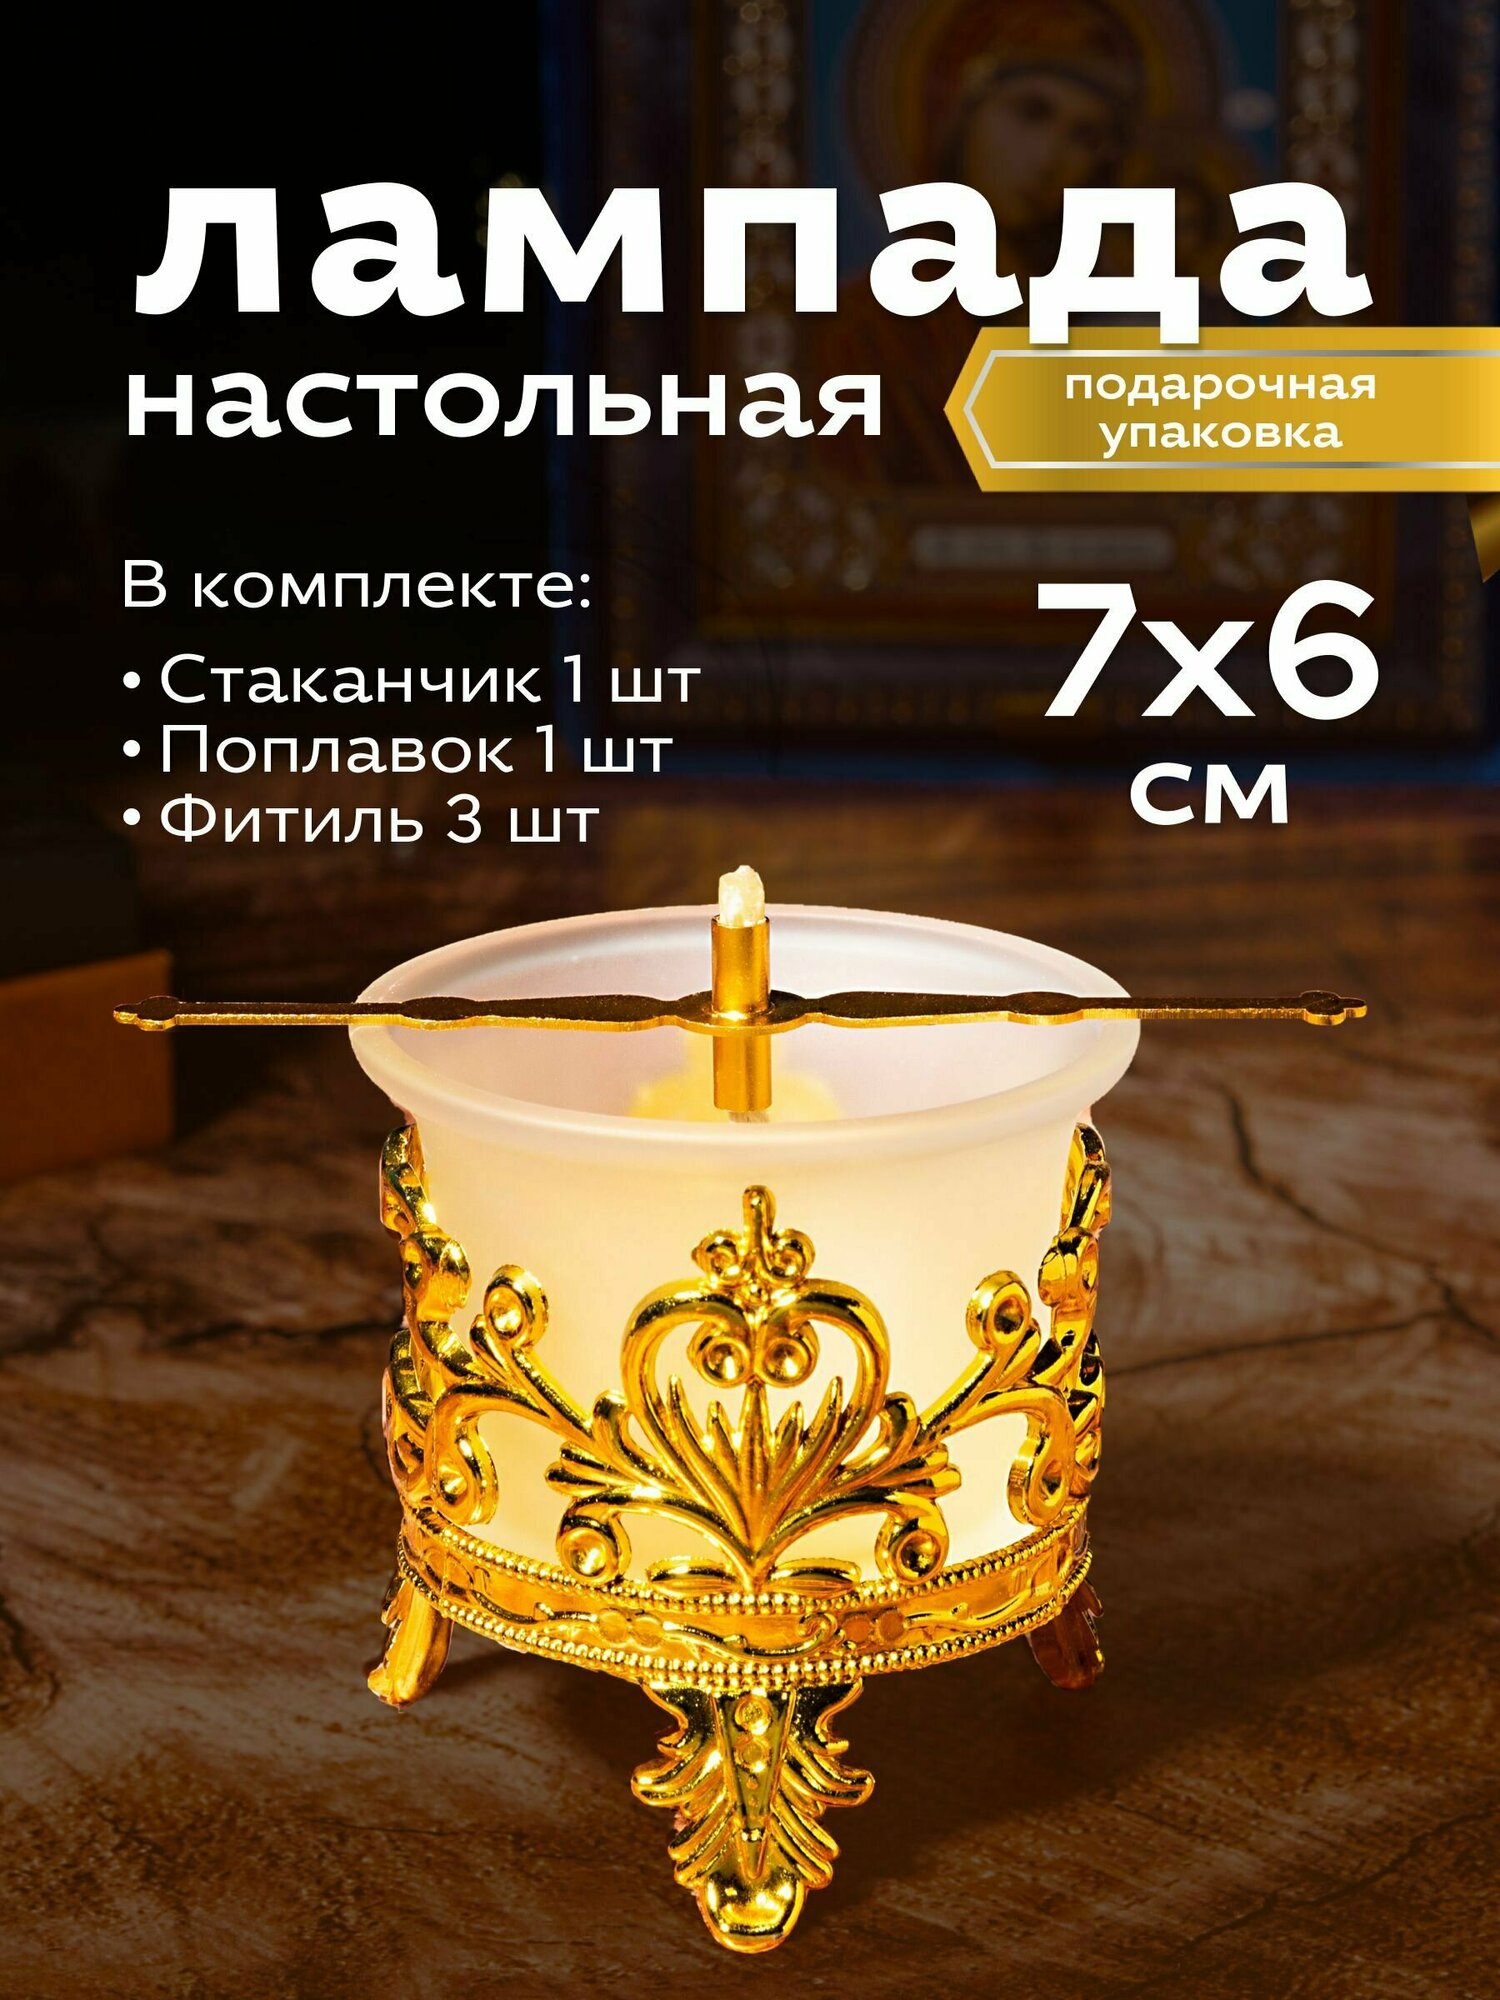 Набор Лампадный №11 - Лампада с подлампадником (цвет Золото)- 1 шт; Фитиль - 3 шт; Поплавок - 1 шт.